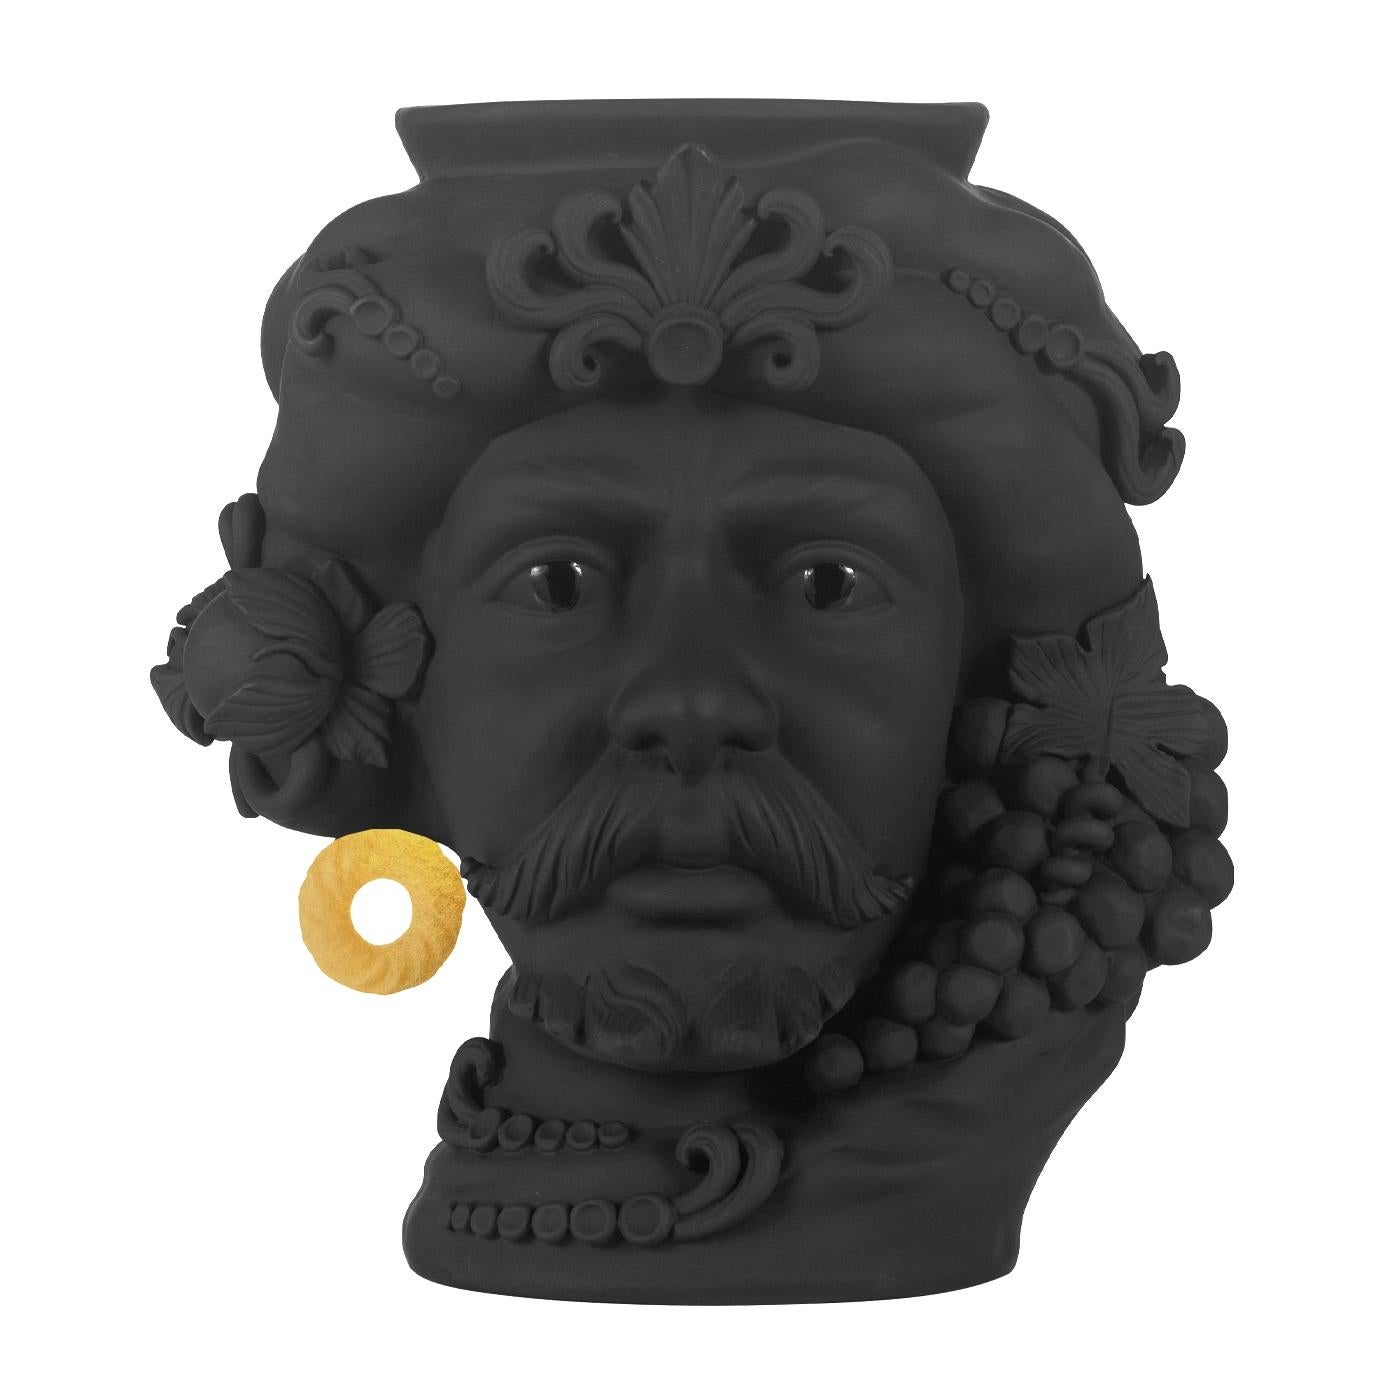 Italian In Stock in Los Angeles, Black & Gold Pirate Terracotta Vase